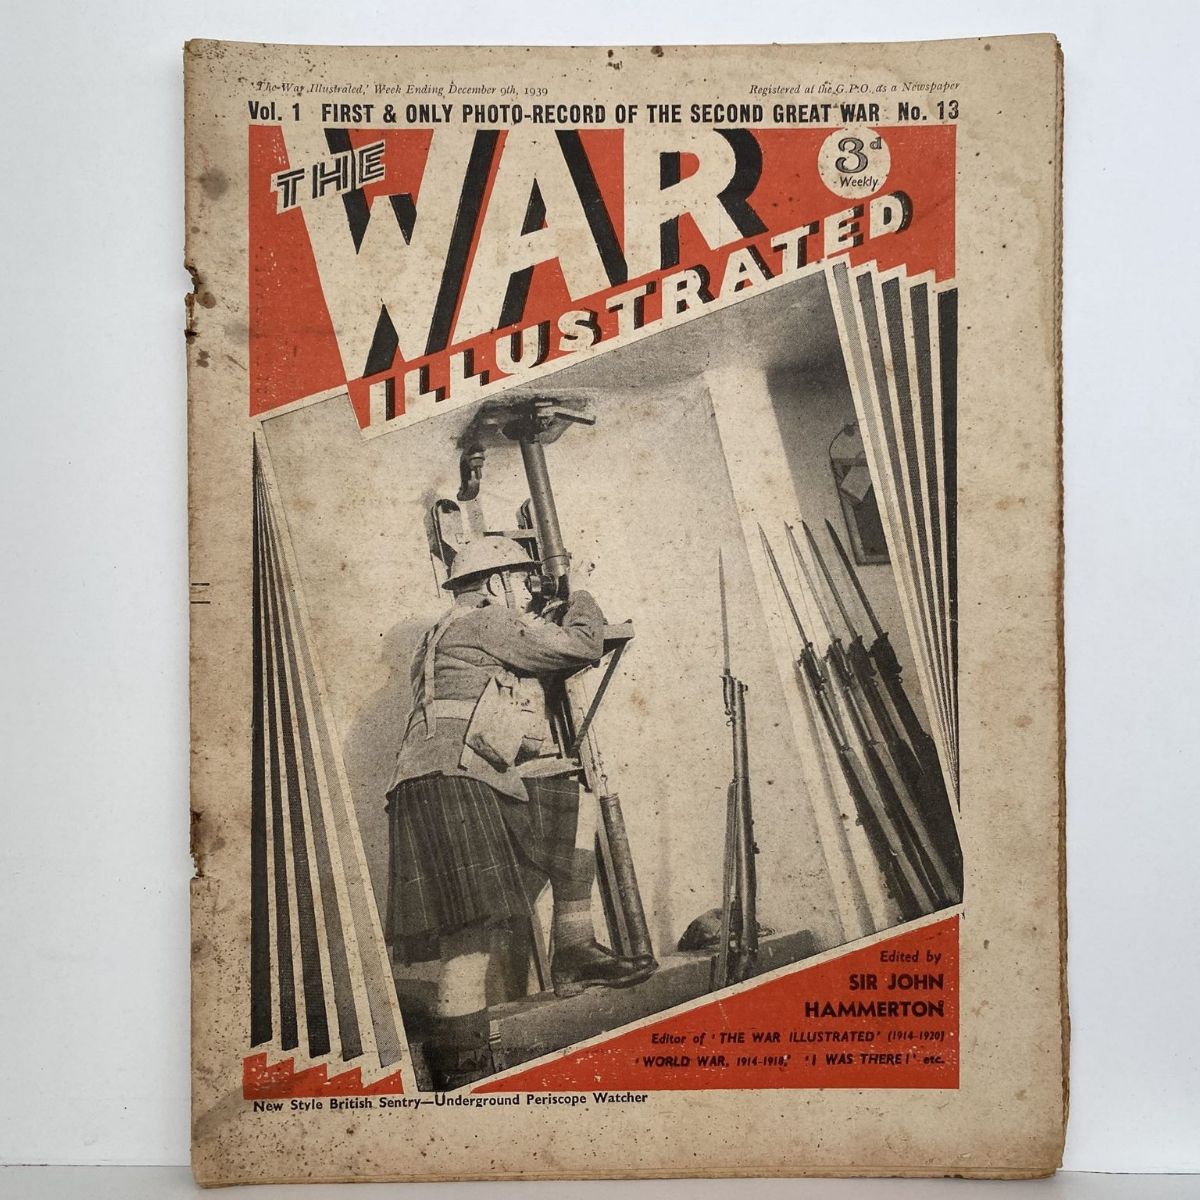 THE WAR ILLUSTRATED - Vol 1, No 13, 9th Dec 1939